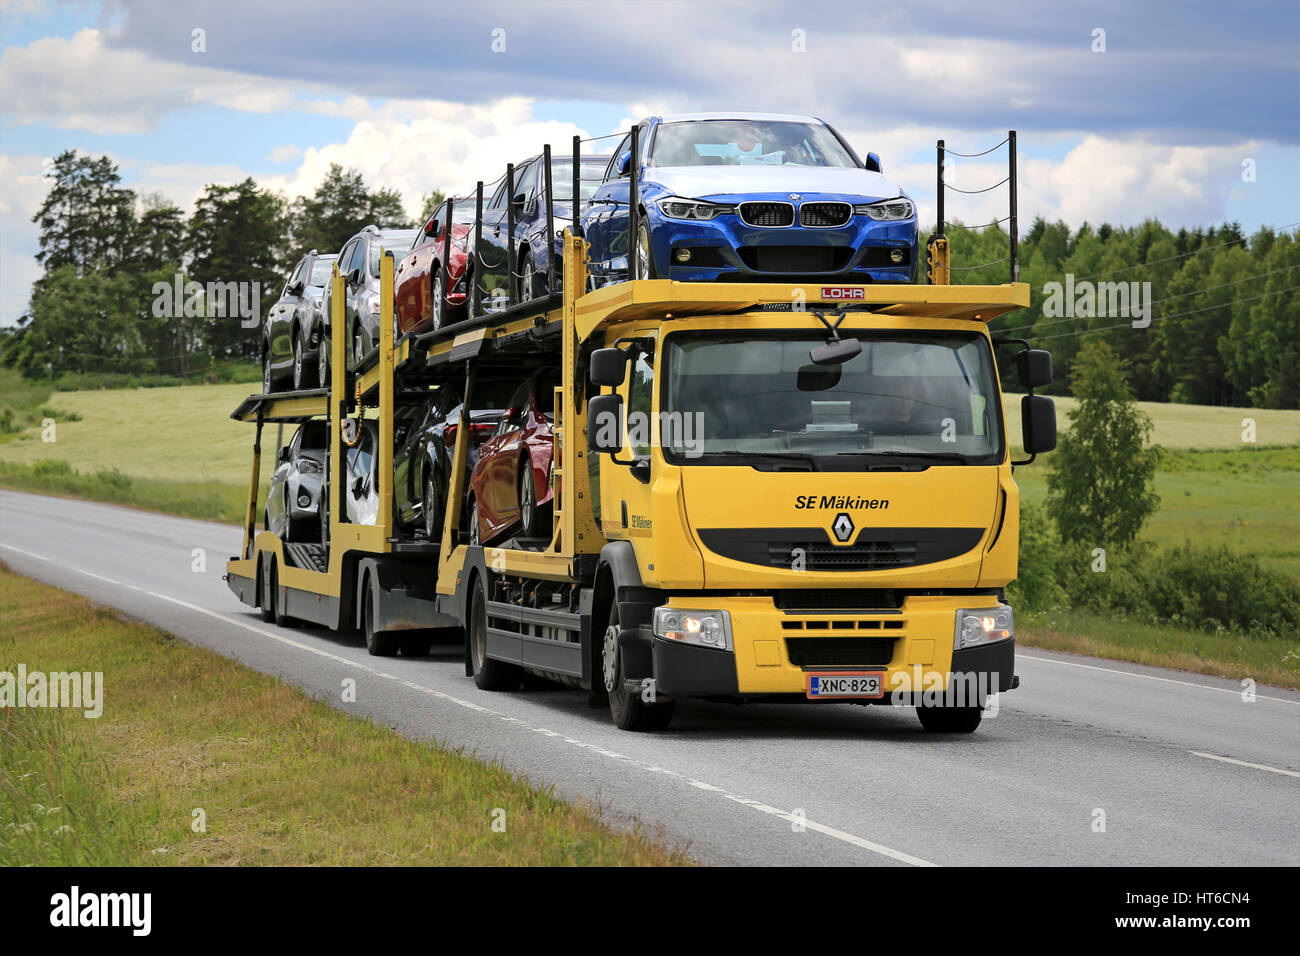 KARJAA, Finlandia - 11 giugno 2016: Giallo Renault Premium car carrier di sè Makinen trasporta nuove vetture lungo l'autostrada su una bella giornata d'estate. Foto Stock